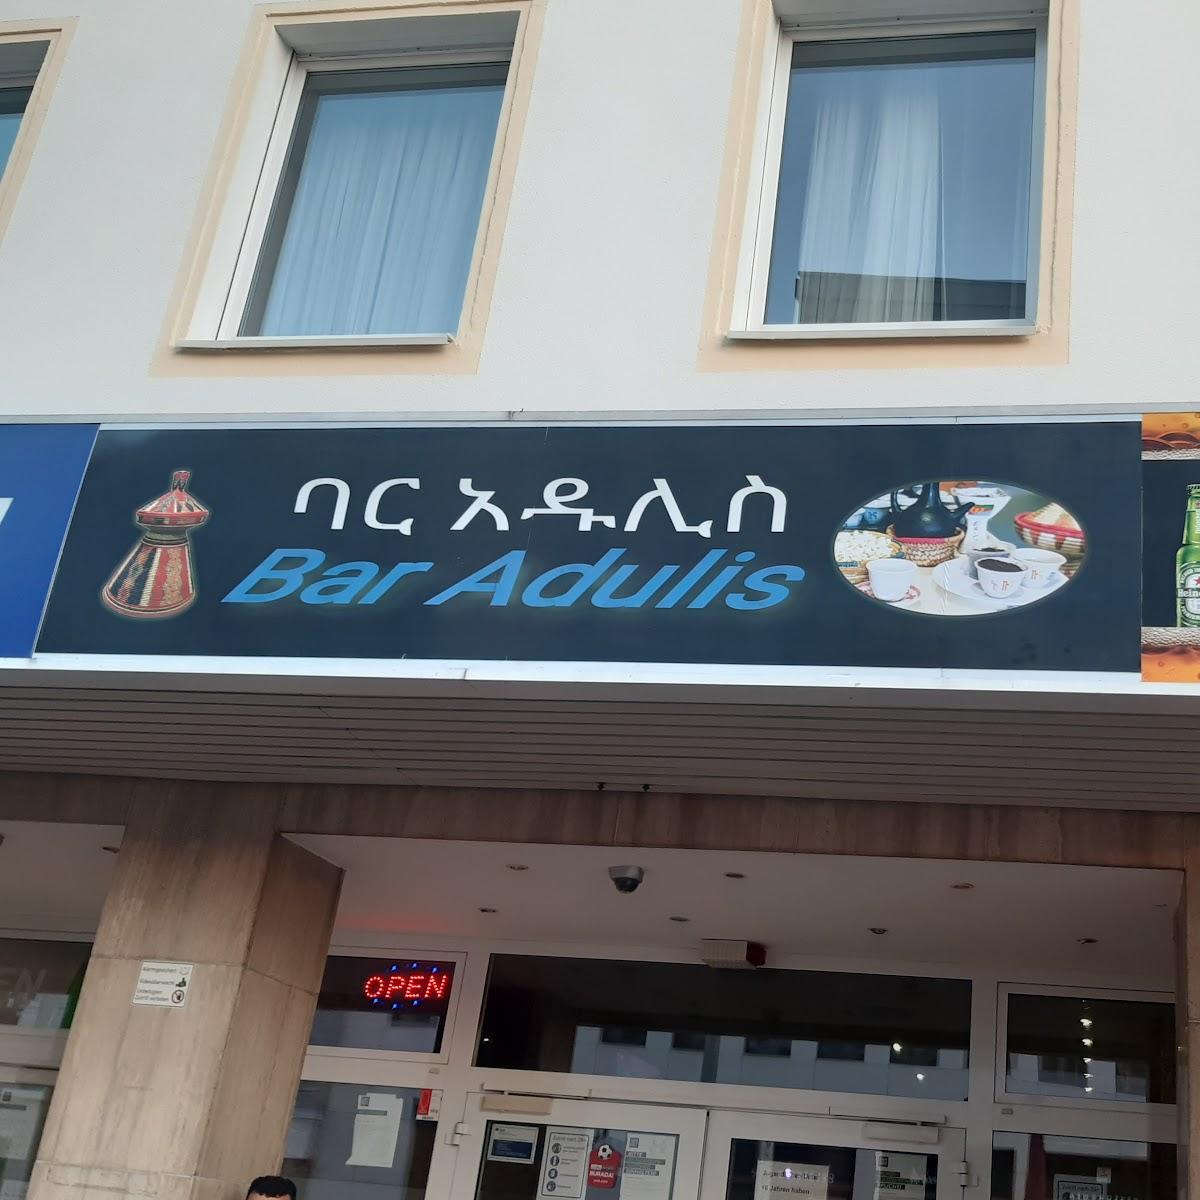 Restaurant "Adulis - Eritreisches & Äthiopisches Restaurant" in Hamm